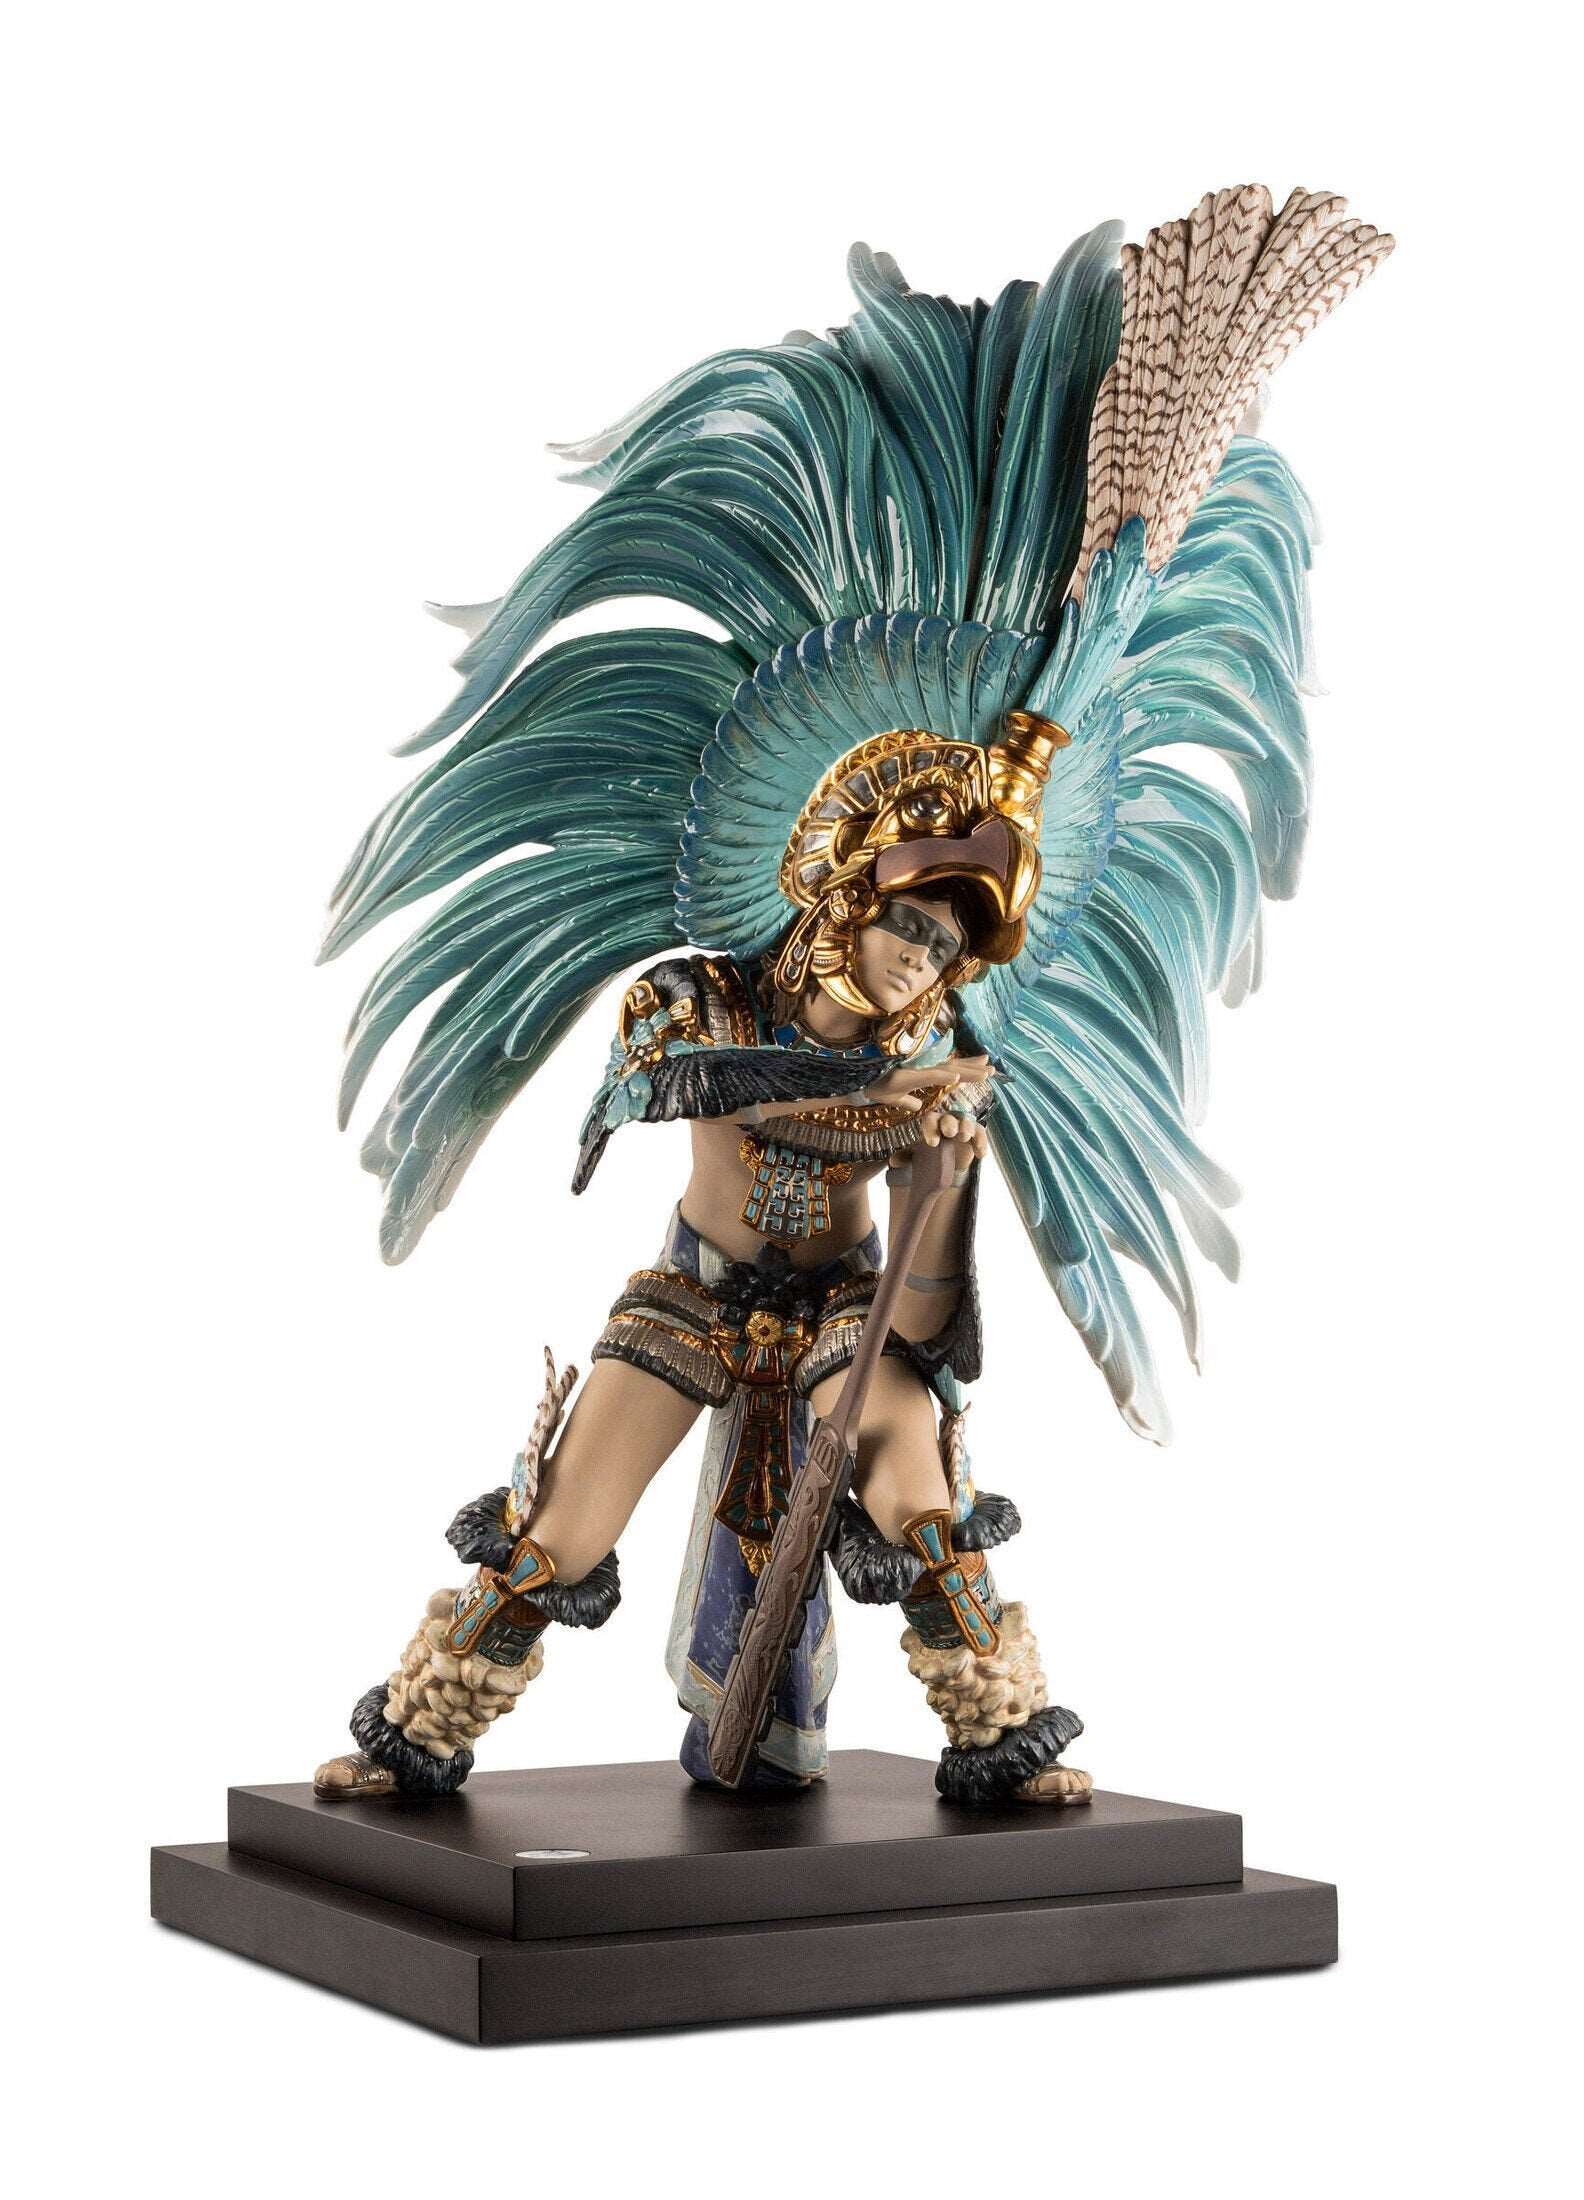 Aztec Dance Sculpture Limited Edition